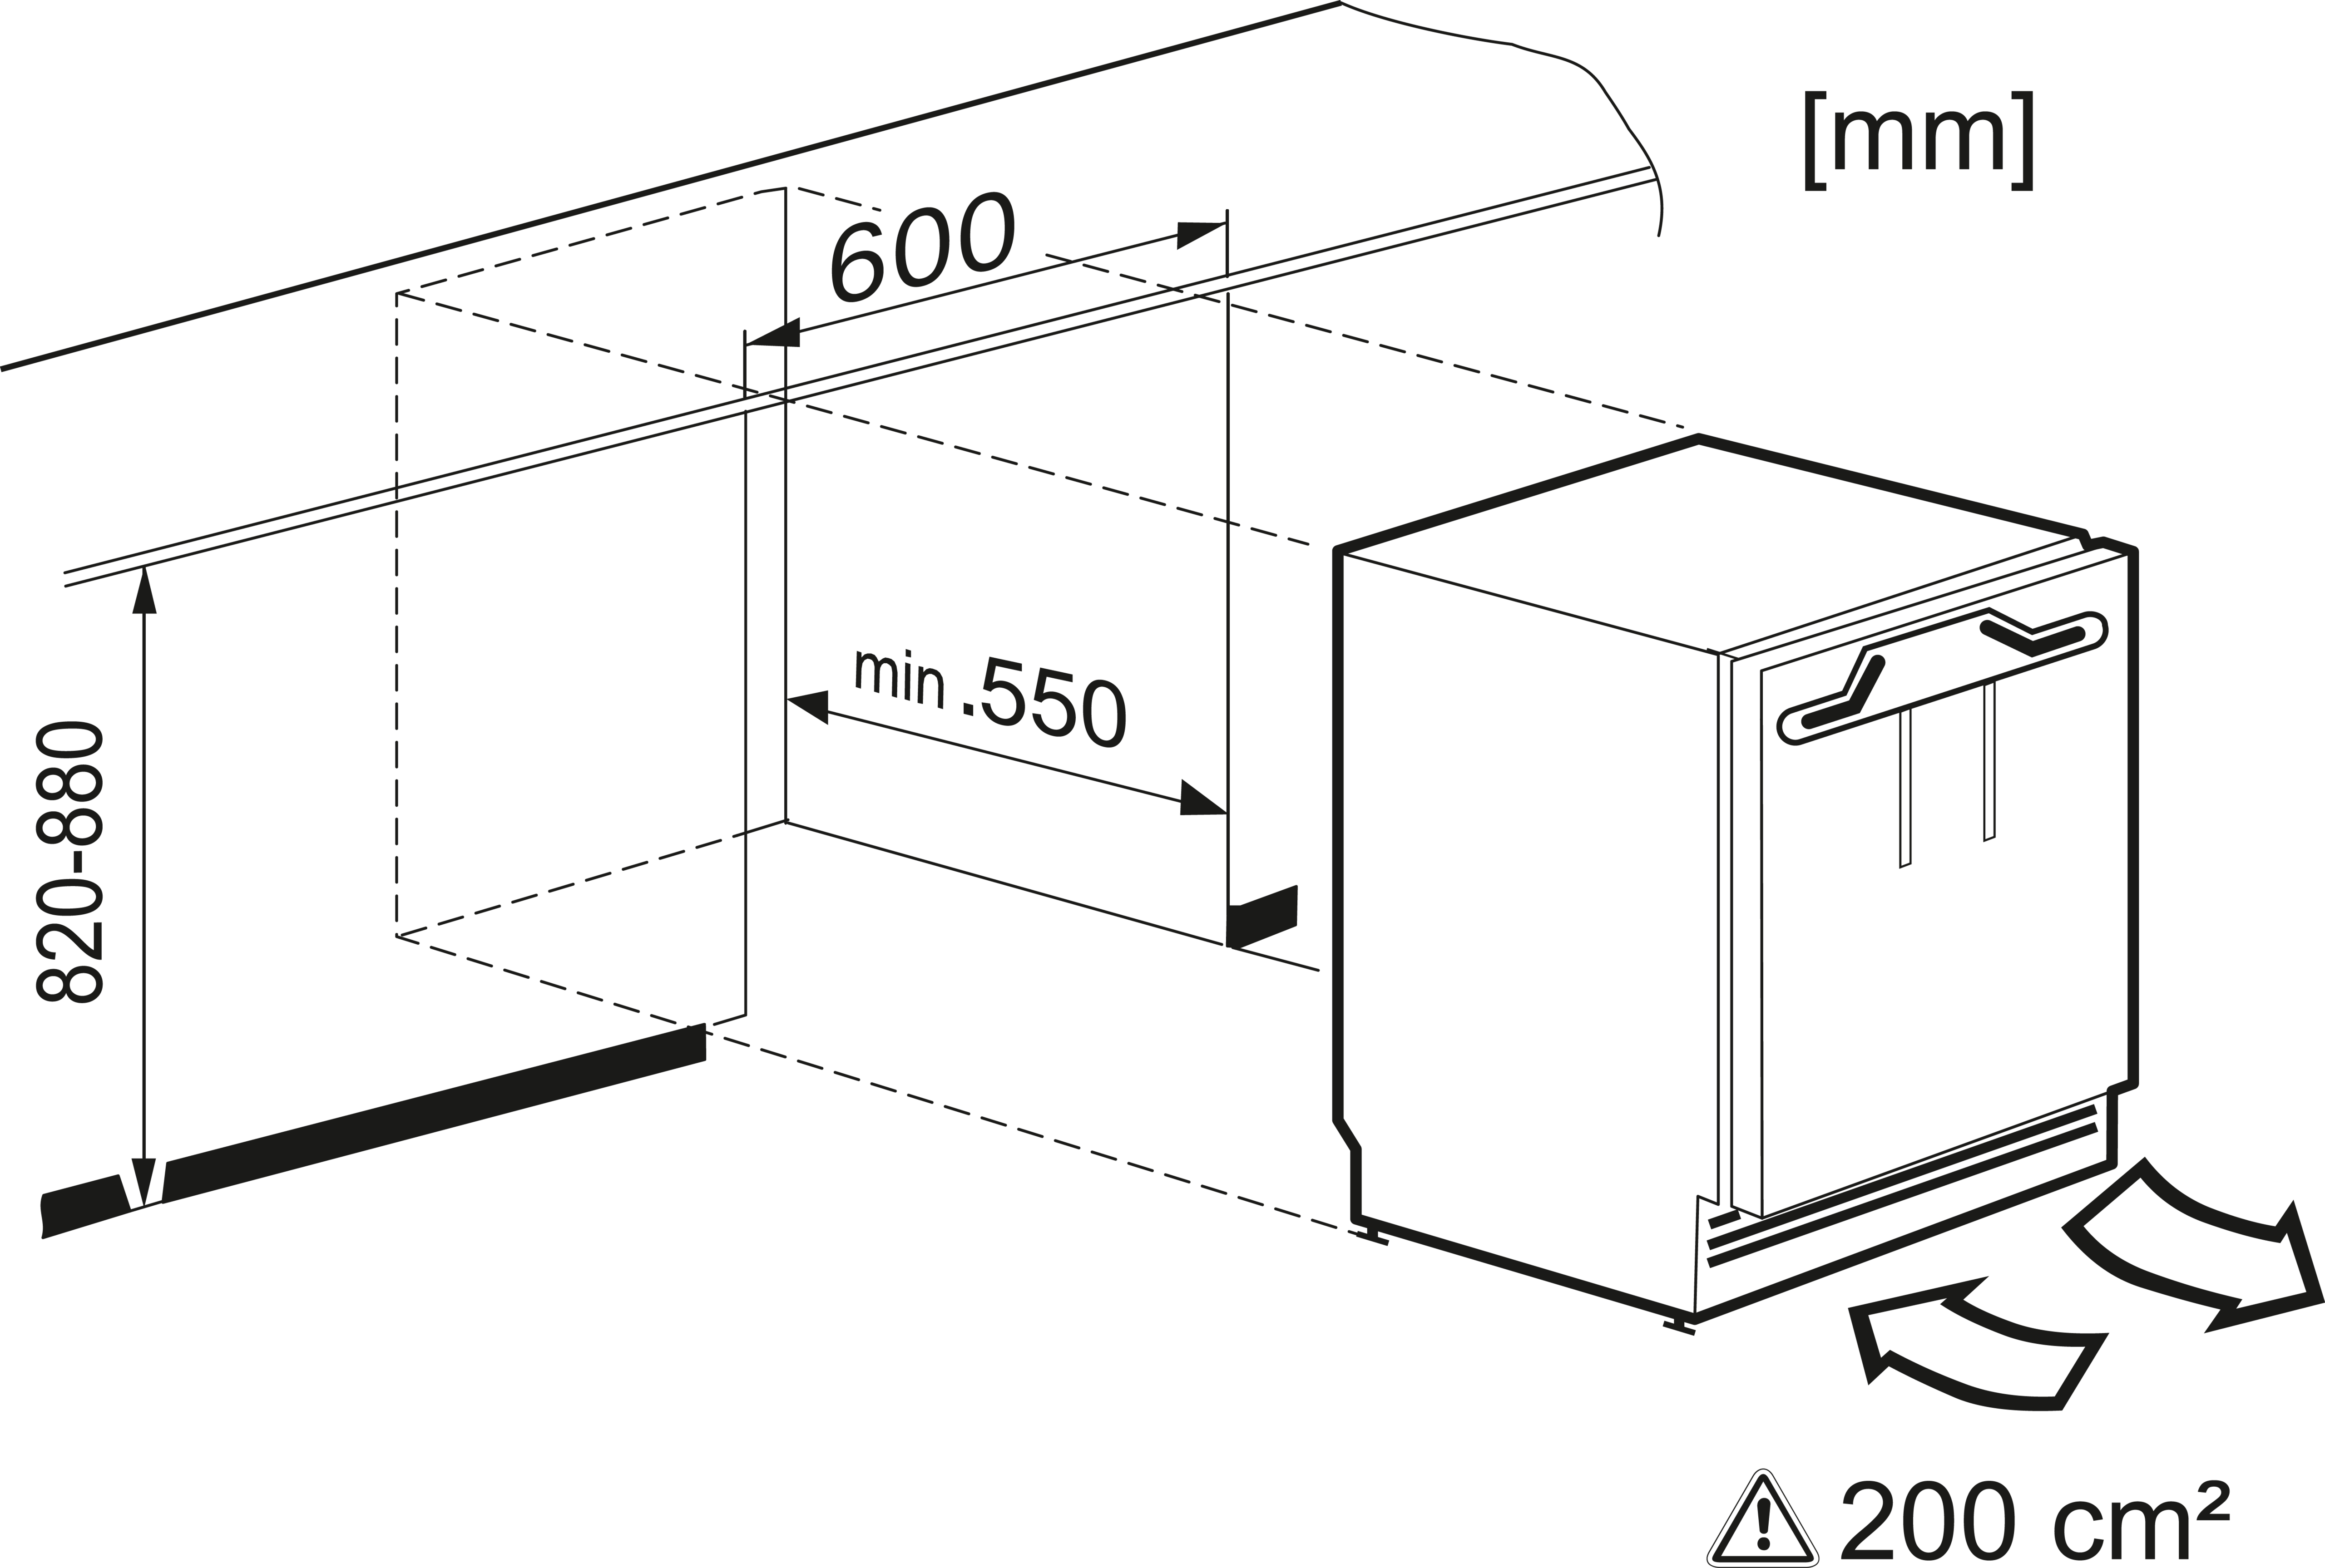 Maattekening MIELE koelkast onderbouw K31222UI-1